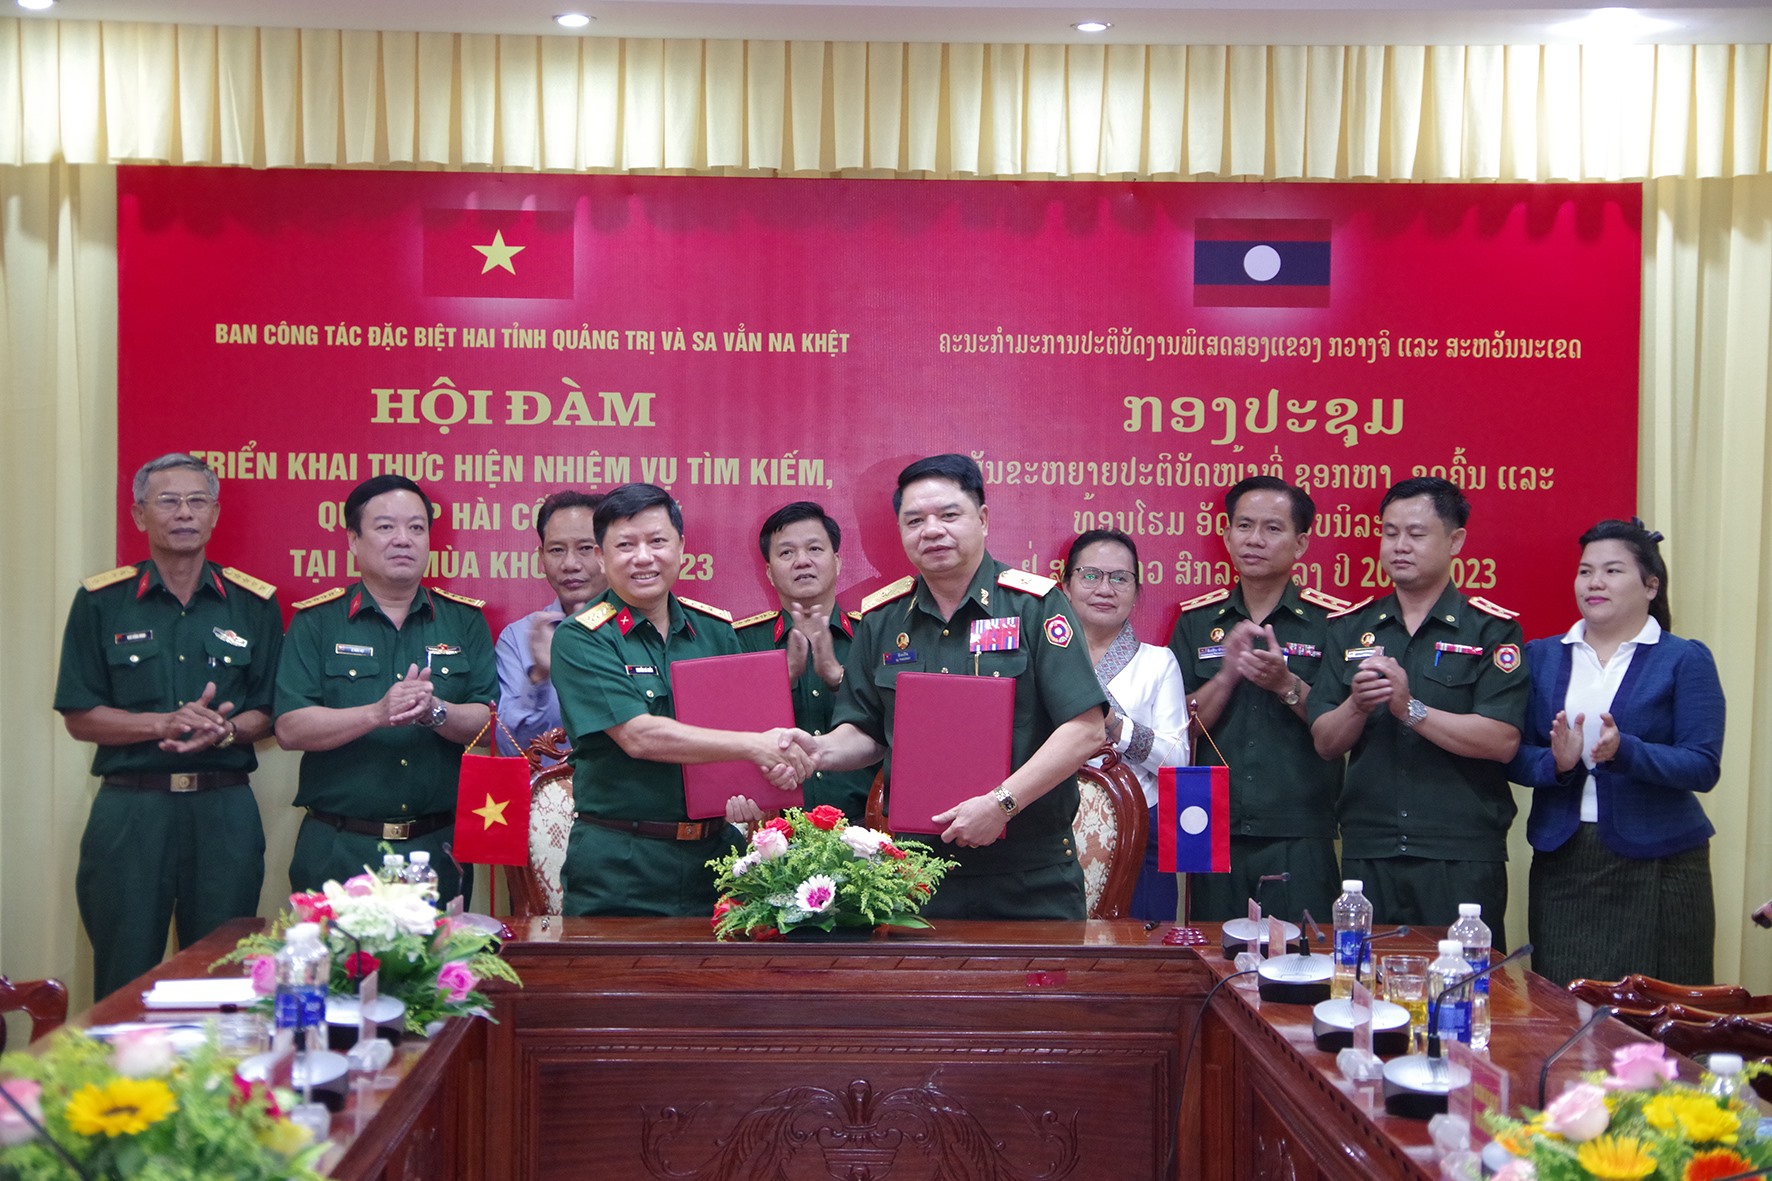 Ban Công tác đặc biệt hai tỉnh Quảng Trị - Savannakhet ký kết biên bản thỏa thuận tiếp tục thực hiện nhiệm vụ tìm kiếm, quy tập hài cốt liệt sĩ mùa khô 2022 – 2023 -Ảnh: Nho Dũng​